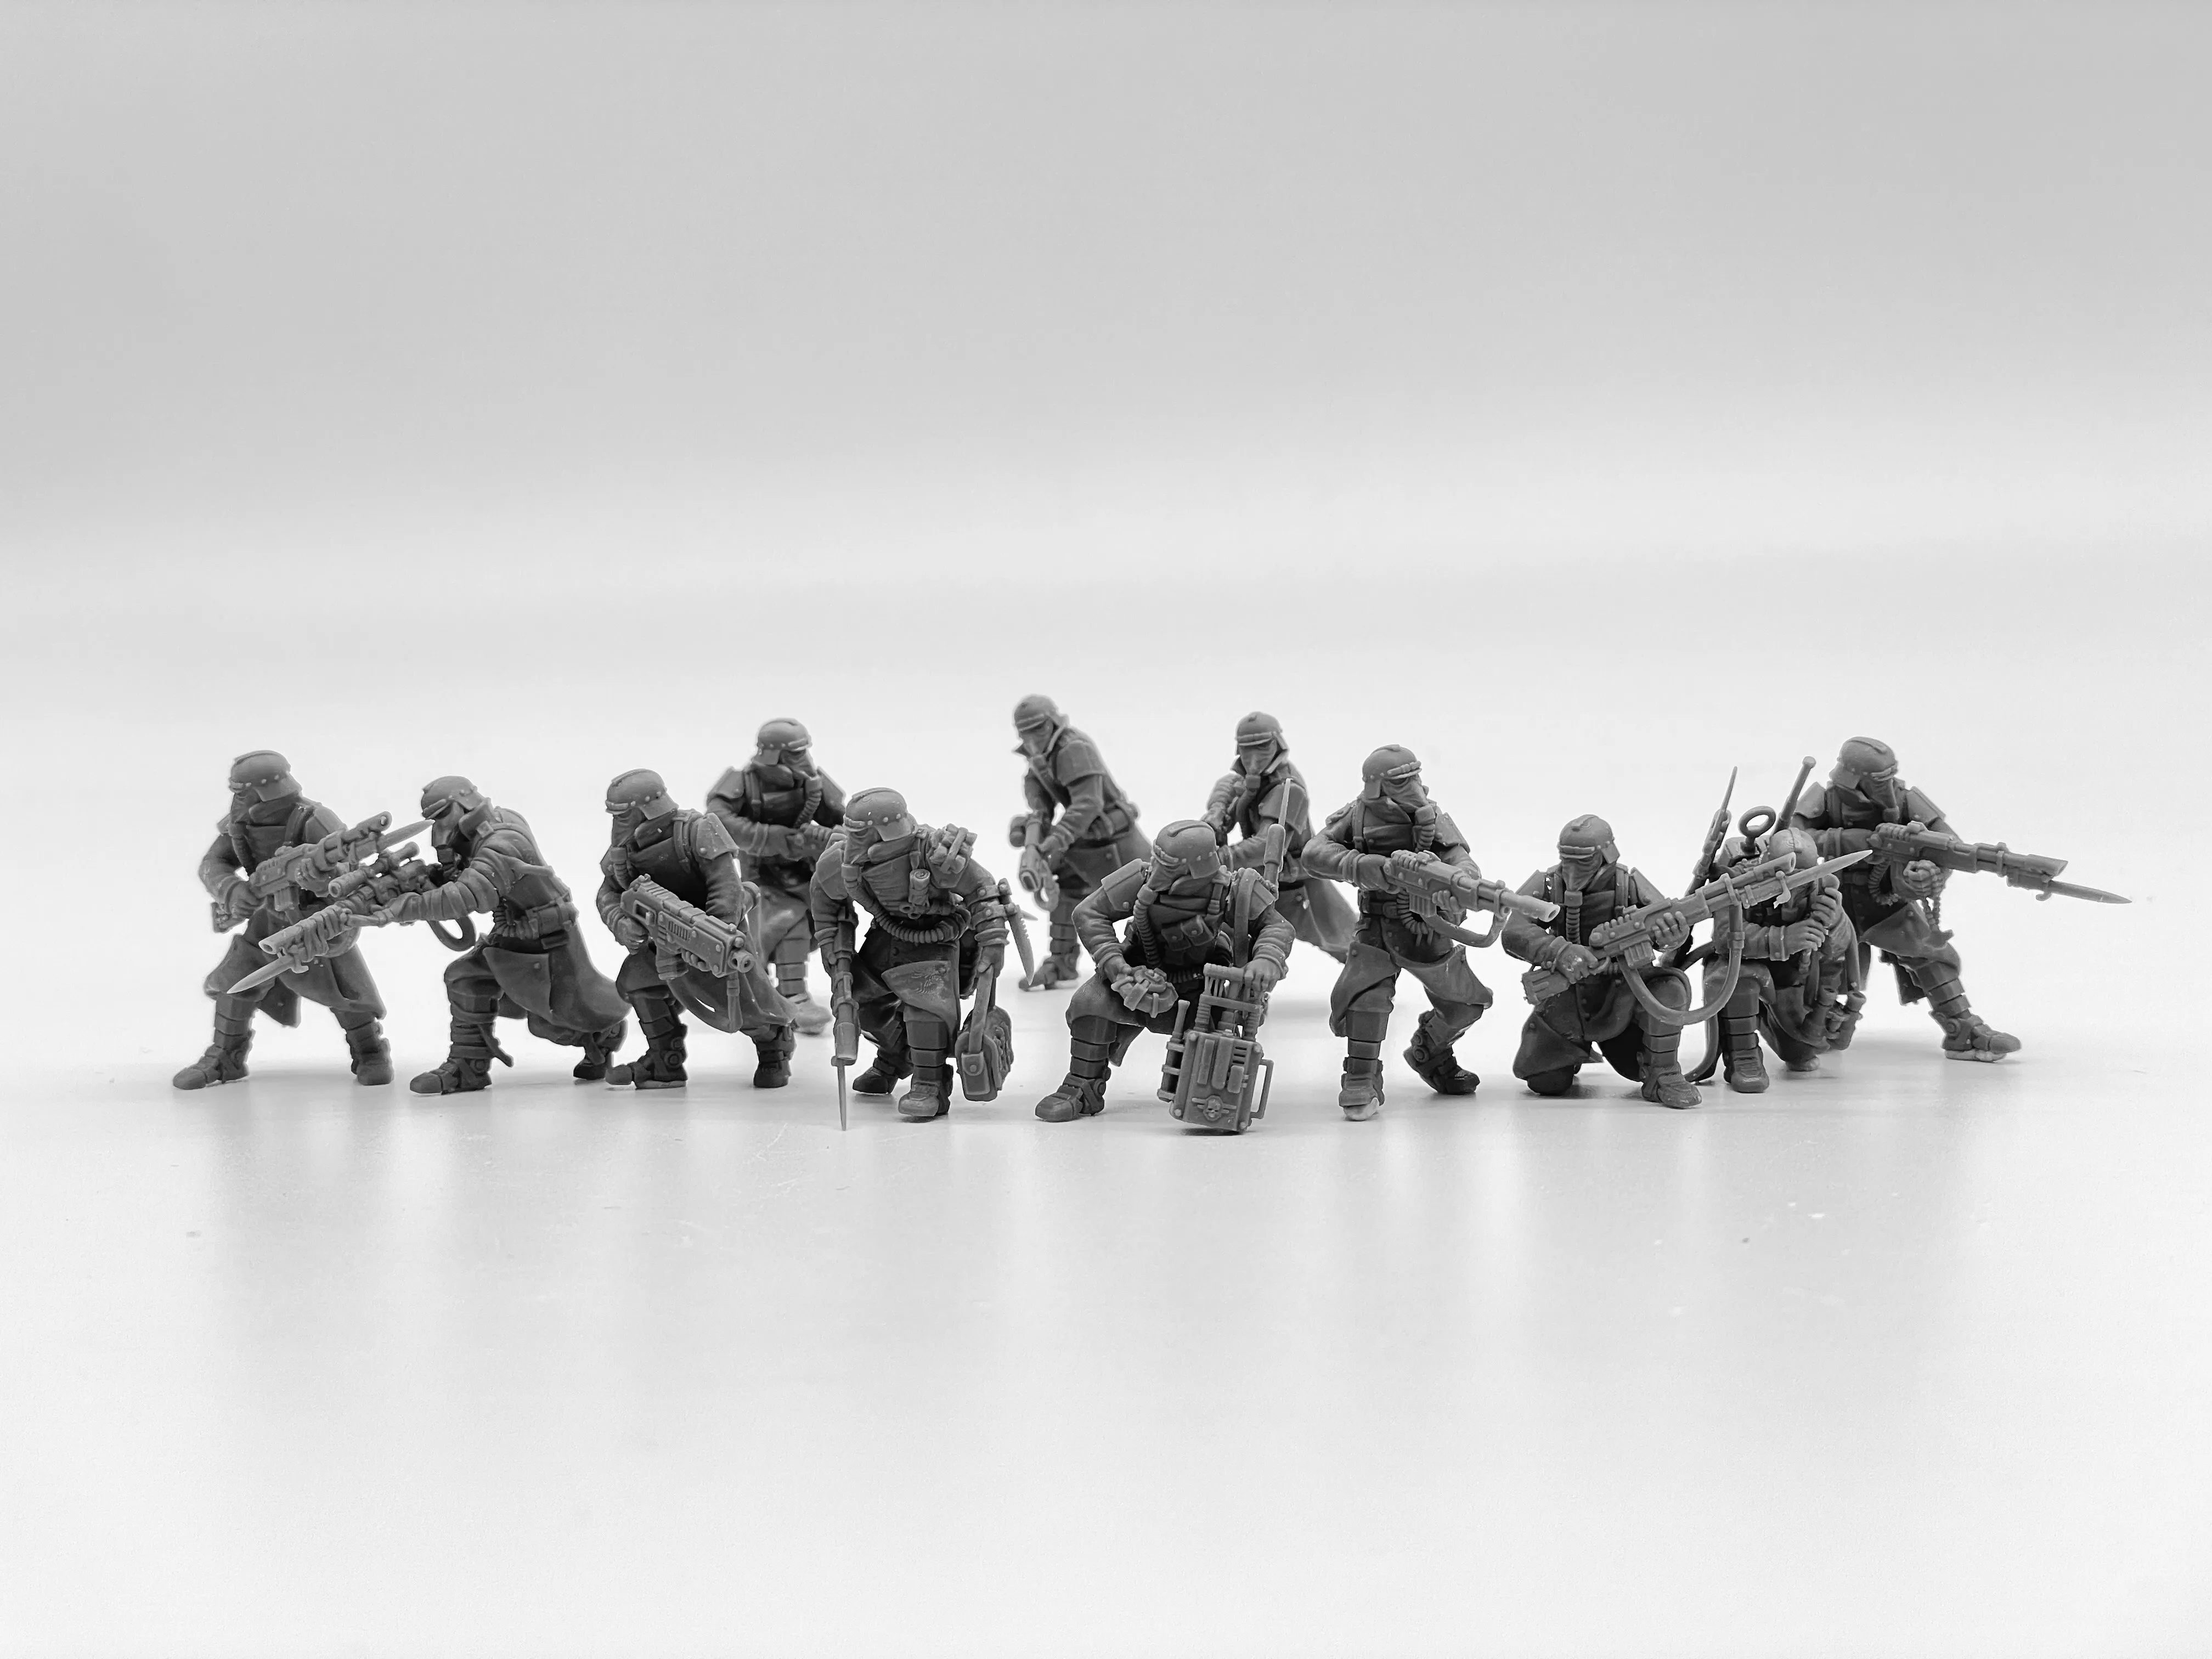 Kit de modèle en résine pour jeu de guerre miniature, Division de la mort de la Force impériale, figurines de soldats non peintes, échelle 28mm, jeu de table